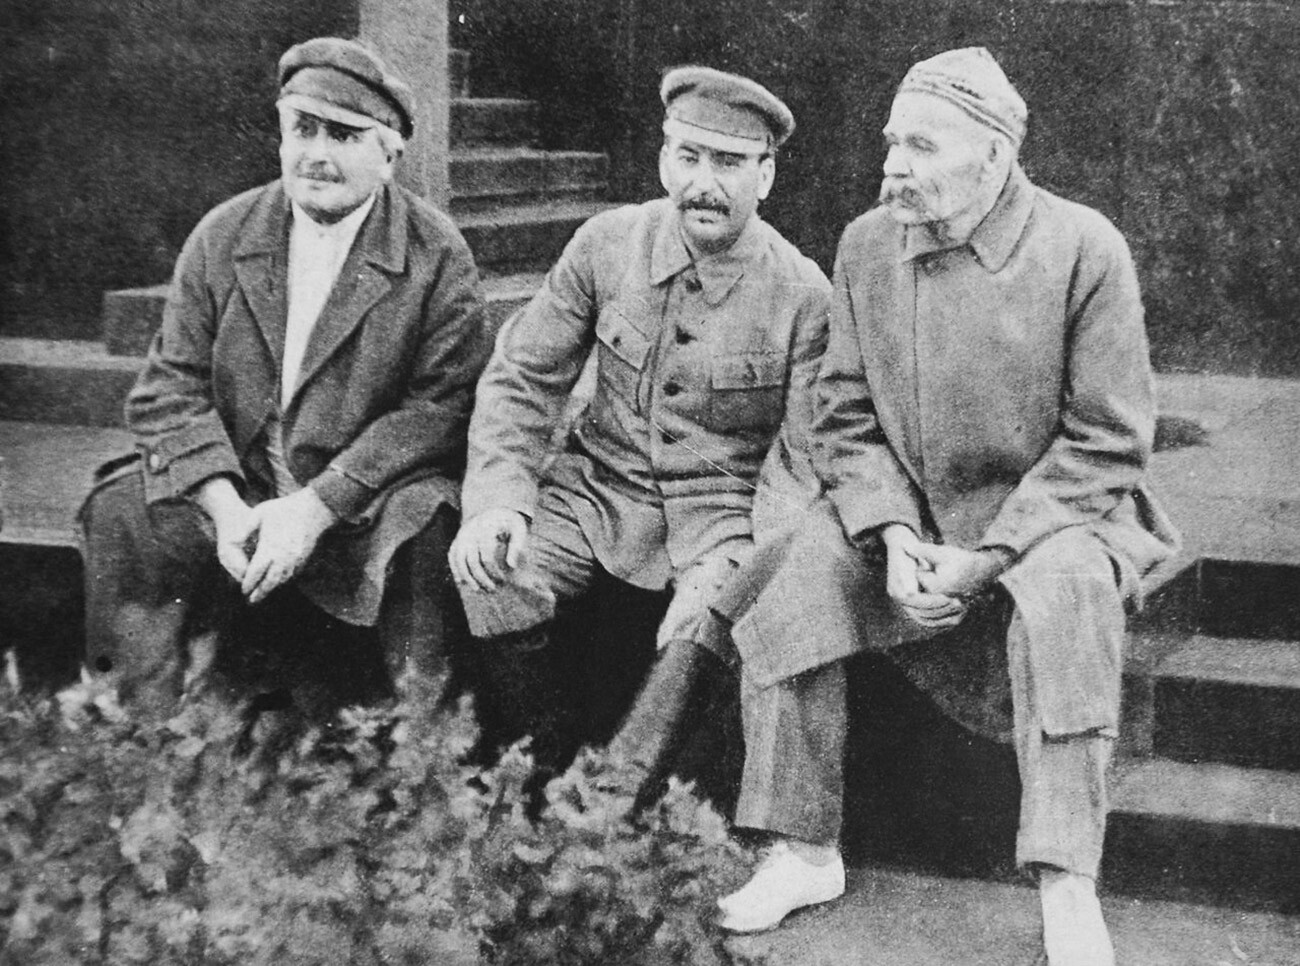 Авељ Јенукидзе, Стаљин и Максим Горки